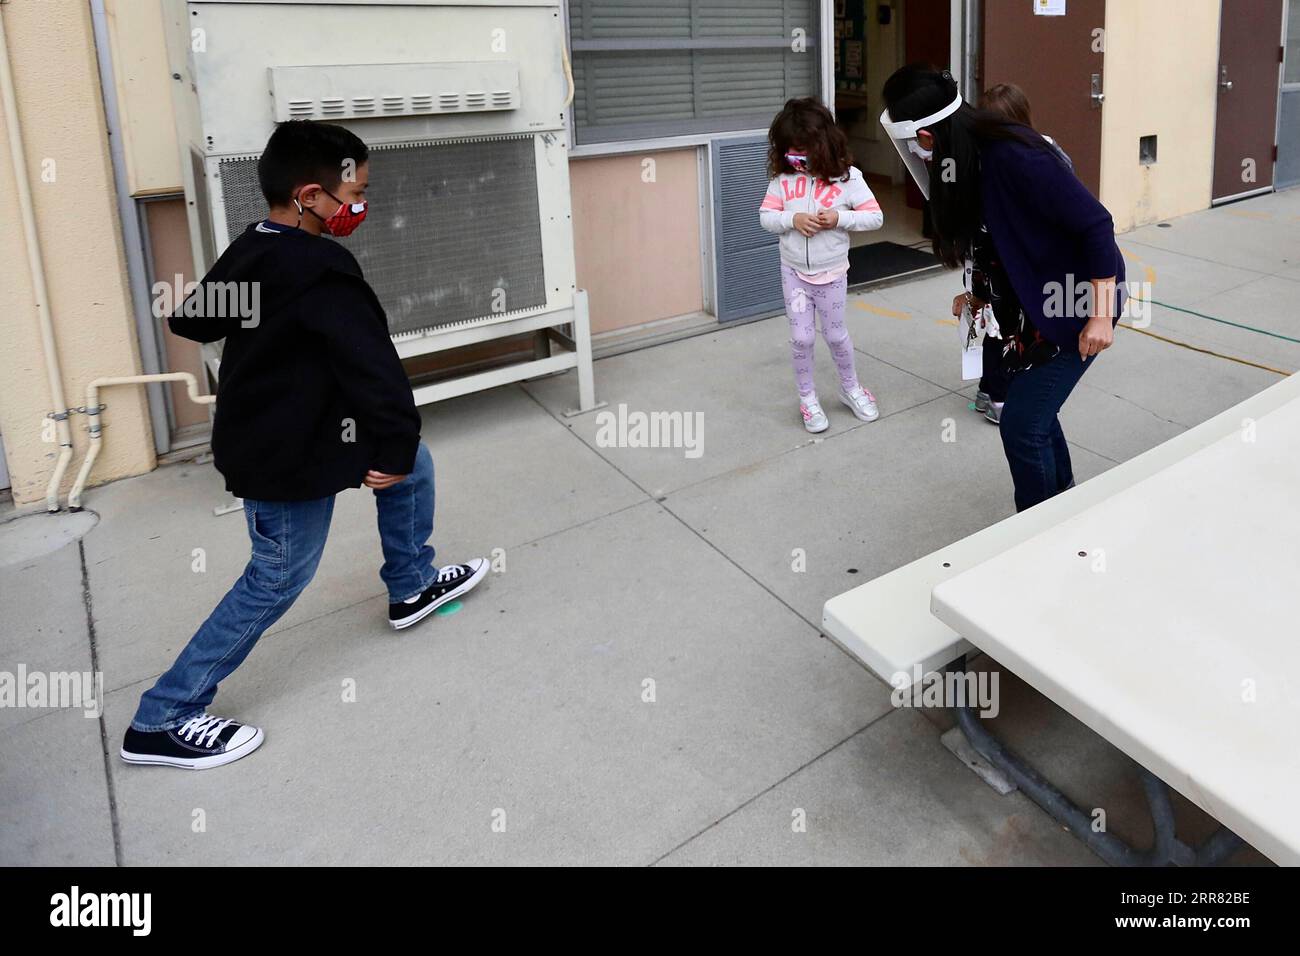 210413 -- LOS ANGELES, 13 aprile 2021 -- gli studenti suonano in una scuola a Los Angeles, California, Stati Uniti, il 13 aprile 2021. Dall'inizio della pandemia di COVID-19 per la prima volta in più di un anno, alcune scuole di Los Angeles hanno riaperto per le lezioni di persona martedì. Gli standard di sicurezza e i test obbligatori per la COVID-19 degli studenti erano in vigore, ma molti genitori hanno ancora optato per mantenere i loro figli ad imparare da casa. U.S.-LOS ANGELES-COVID-19-SCHOOLS-REOPEN XINHUA PUBLICATIONXNOTXINXCHN Foto Stock